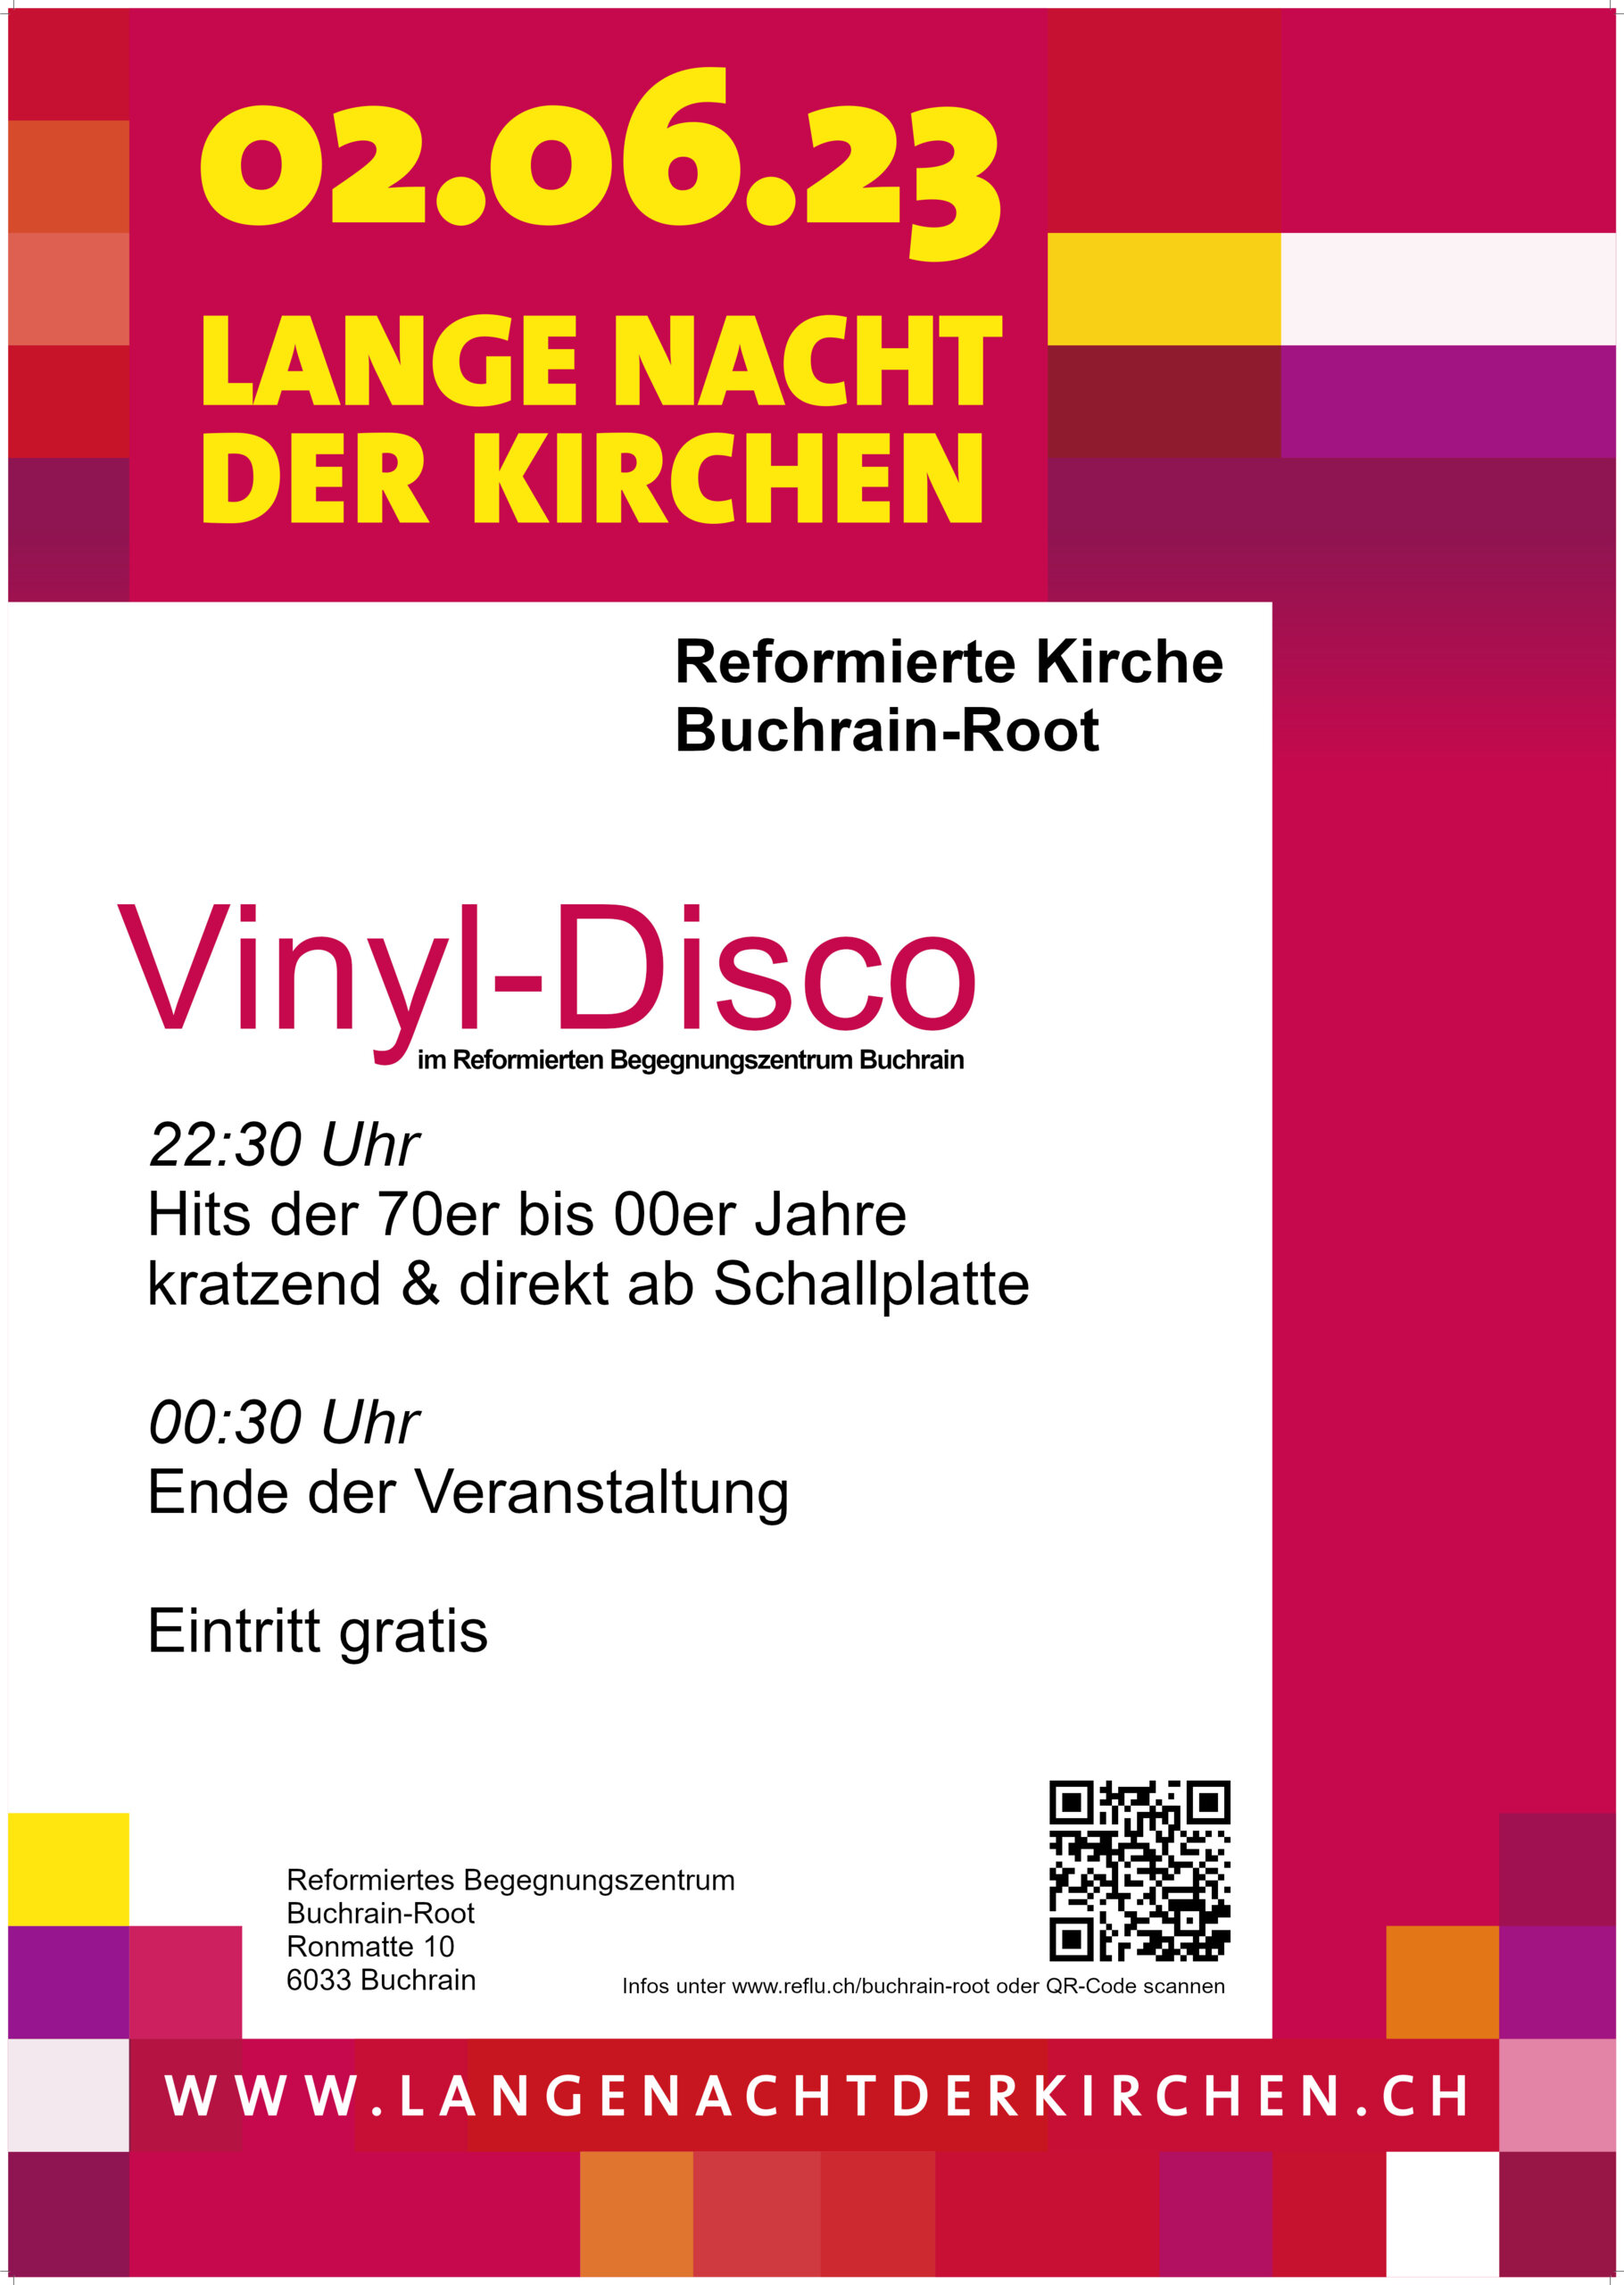 Vinyl-Disco